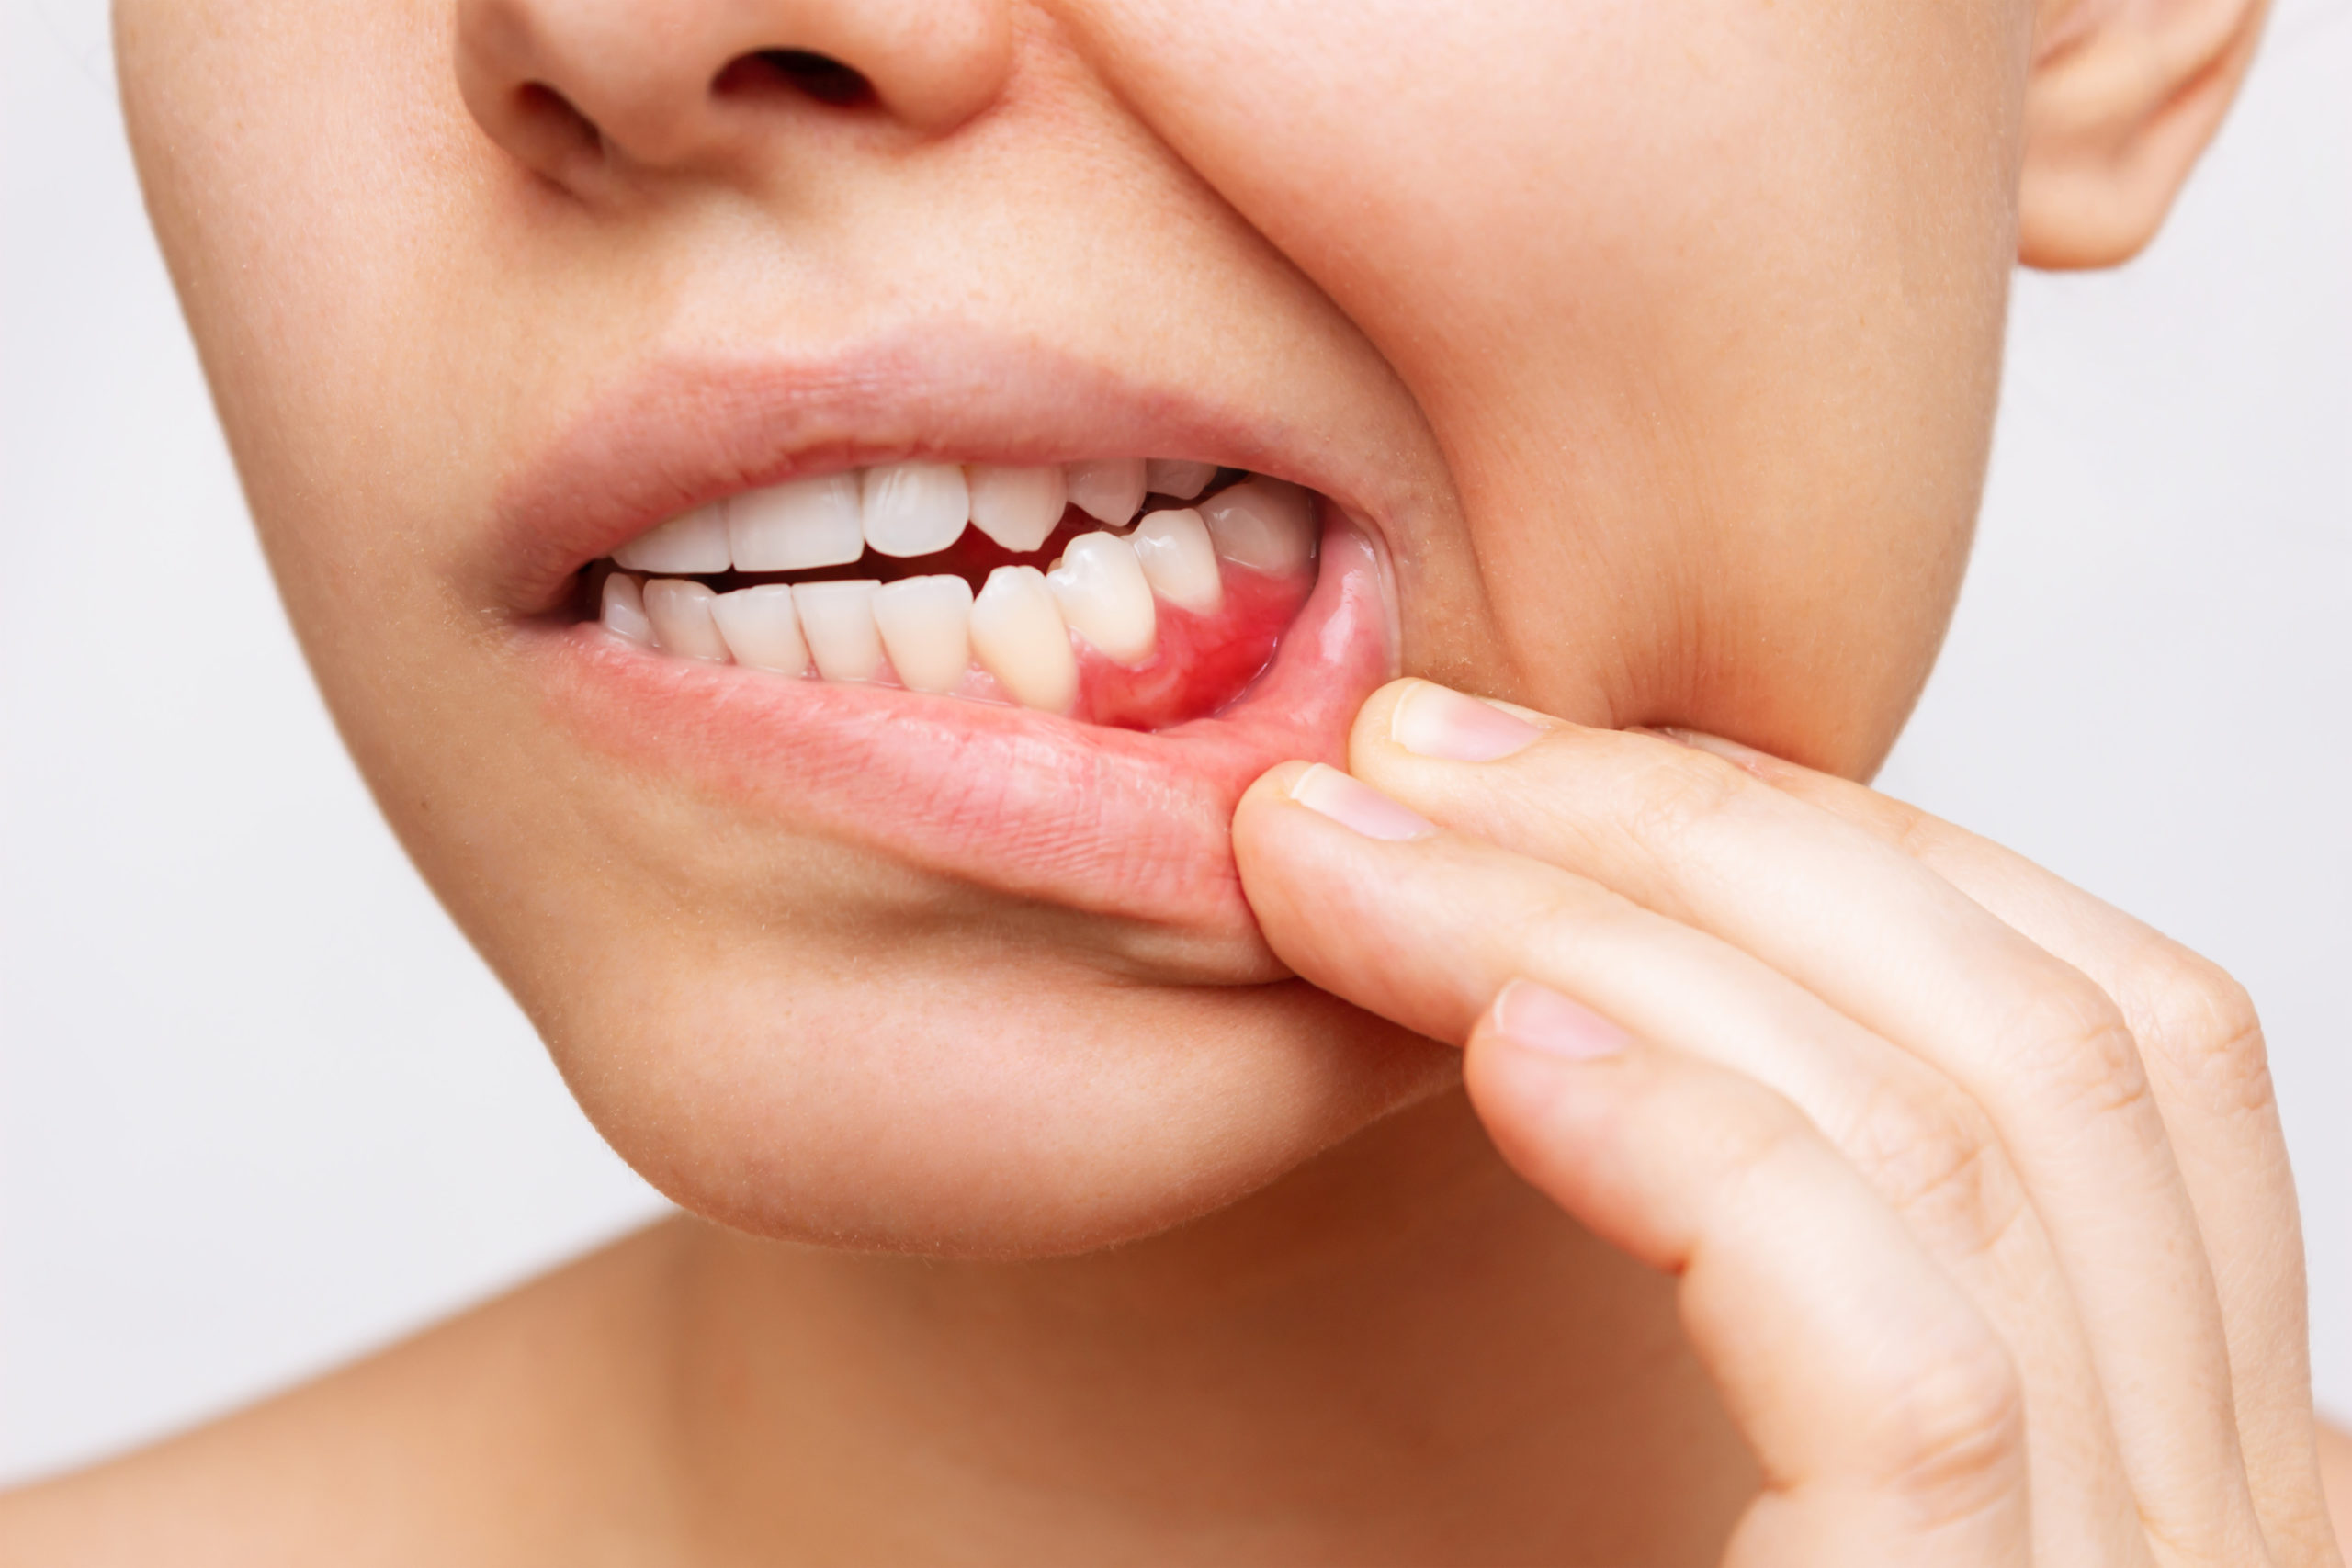 唇をめくって赤く腫れた歯茎を確認する人